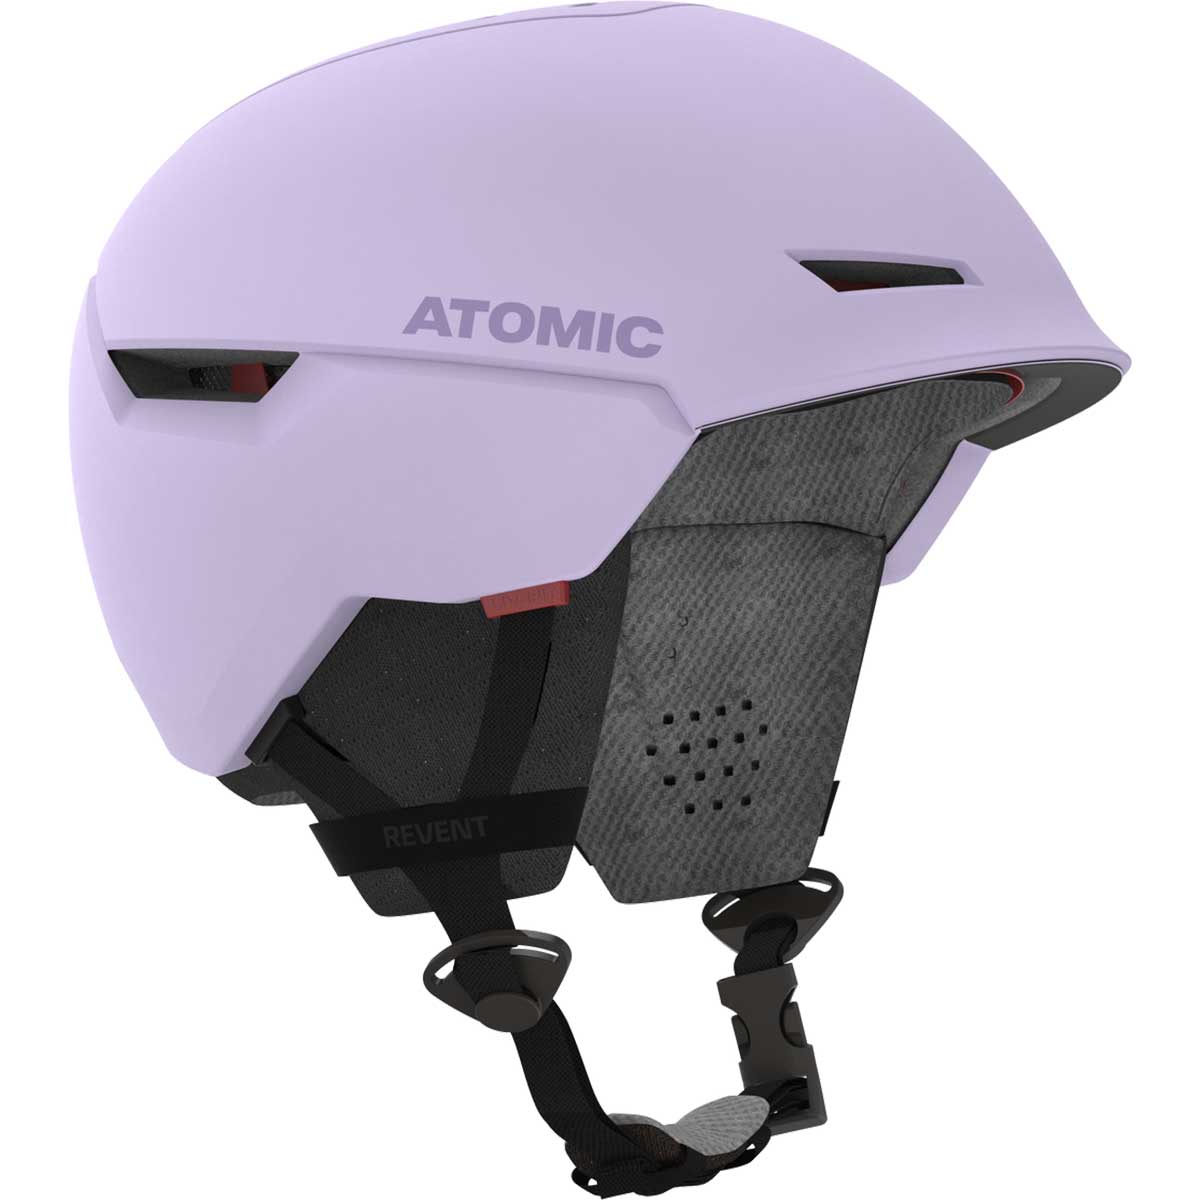 ATOMIC(アトミック) AN5006522 REVENT レディース スノーヘルメット オールマウンテン